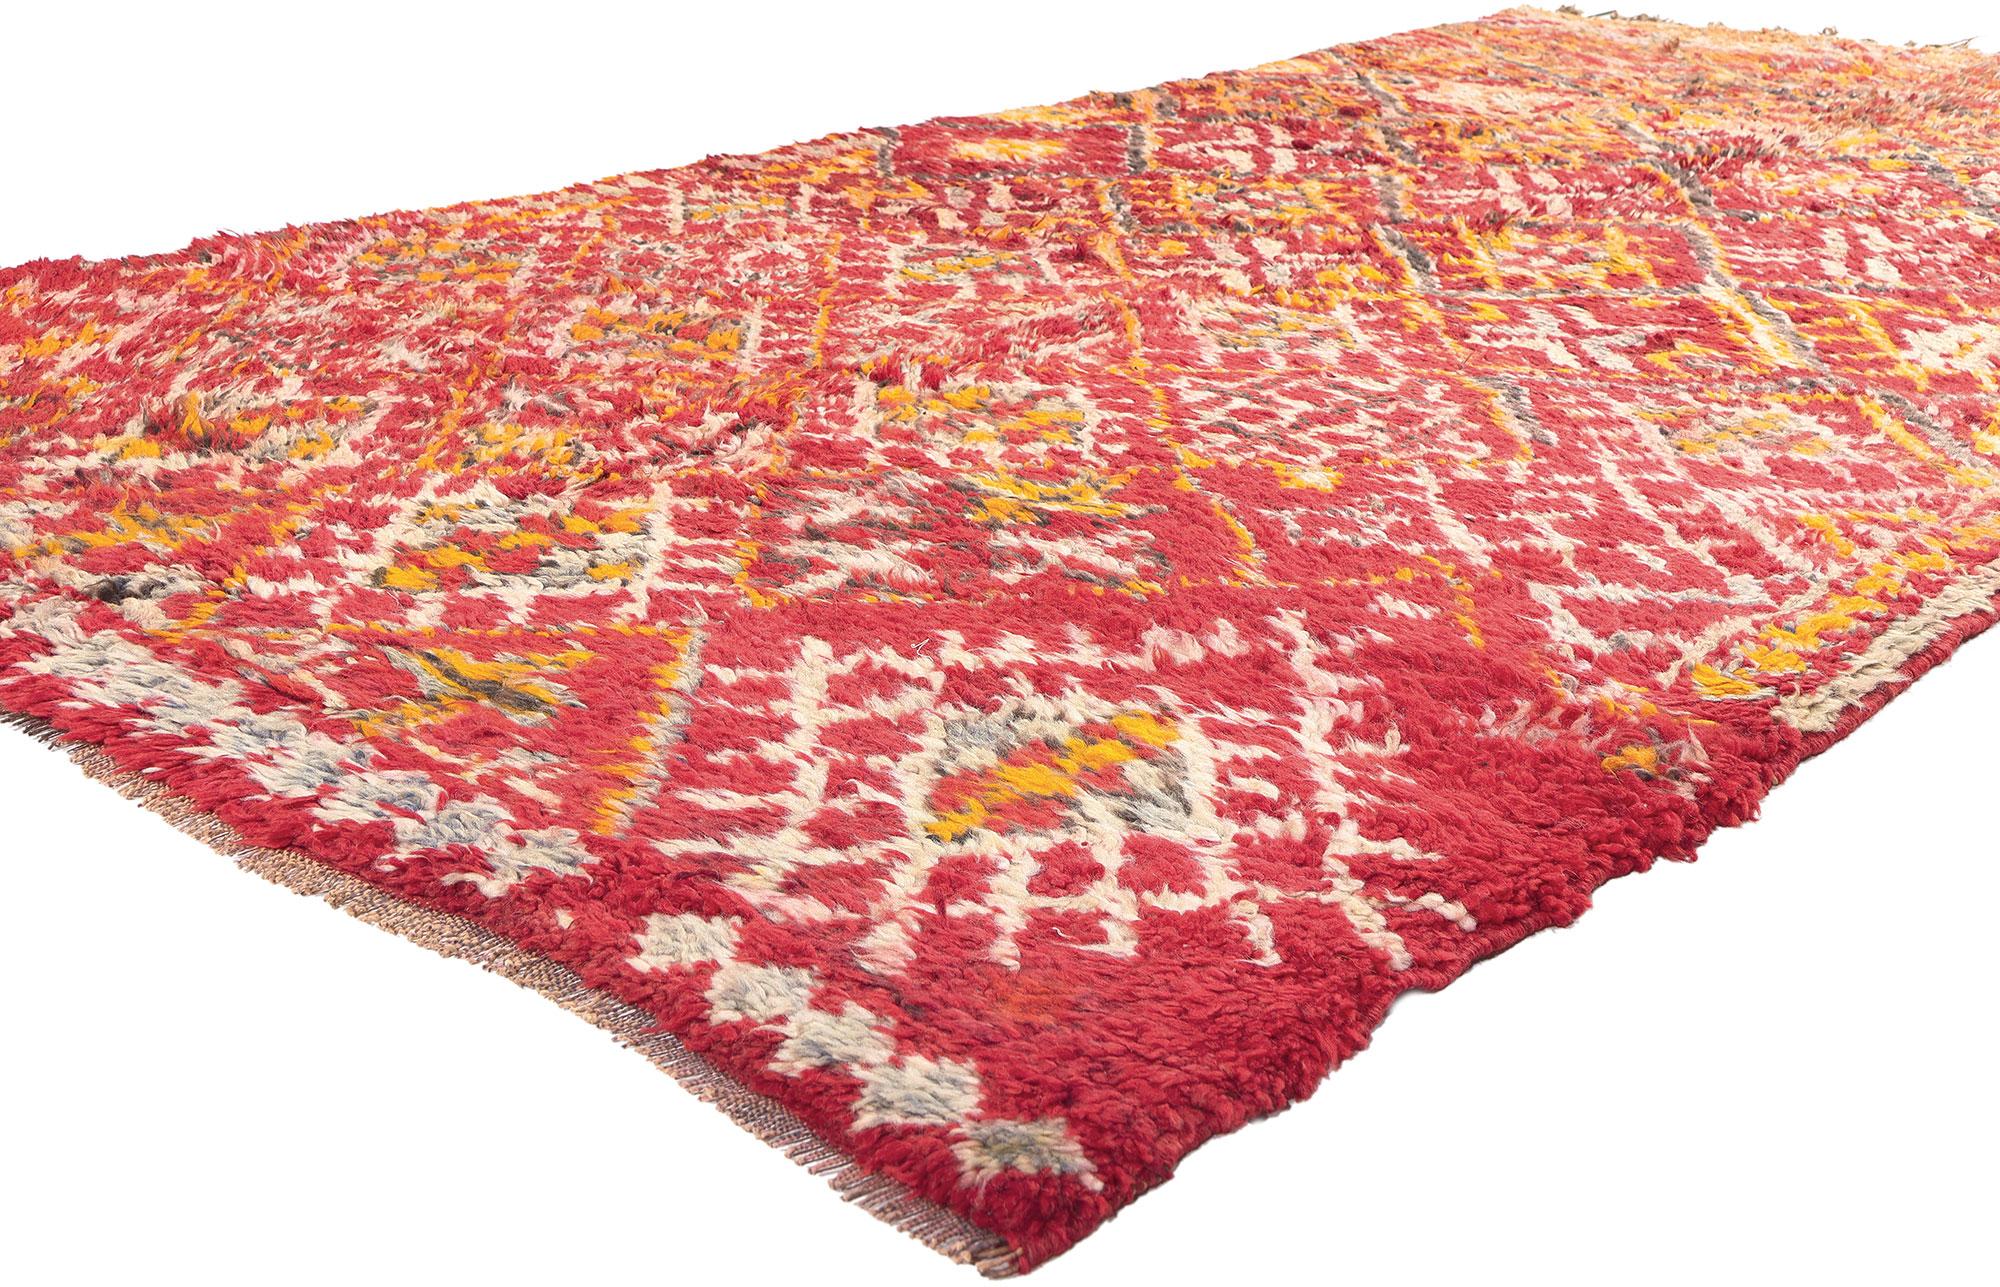 20944 Vintage Rot Beni MGuild Marokkanischer Teppich, 05'08 x 10'02.  Dieser alte Beni MGuild-Teppich ist ein Zeugnis der reichen marokkanischen Handwerkskultur. Er wurde von den geschickten Kunsthandwerkern des Beni MGuild-Stammes, einer besonderen